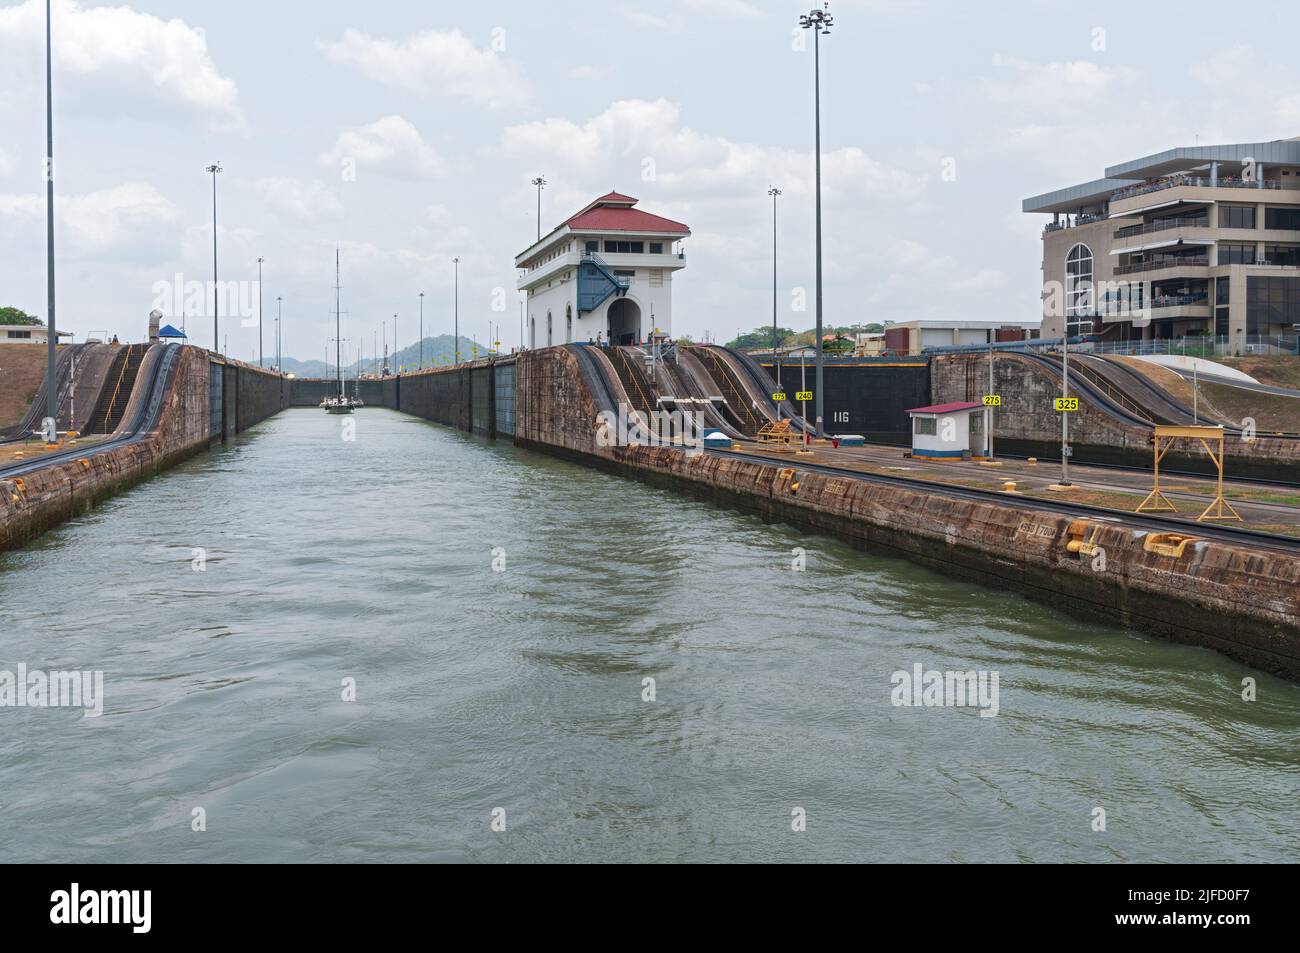 Canal de Panama, Panama, Miraflores Lock, l'une des trois écluses qui forment le canal, montré par une journée ensoleillée. Banque D'Images